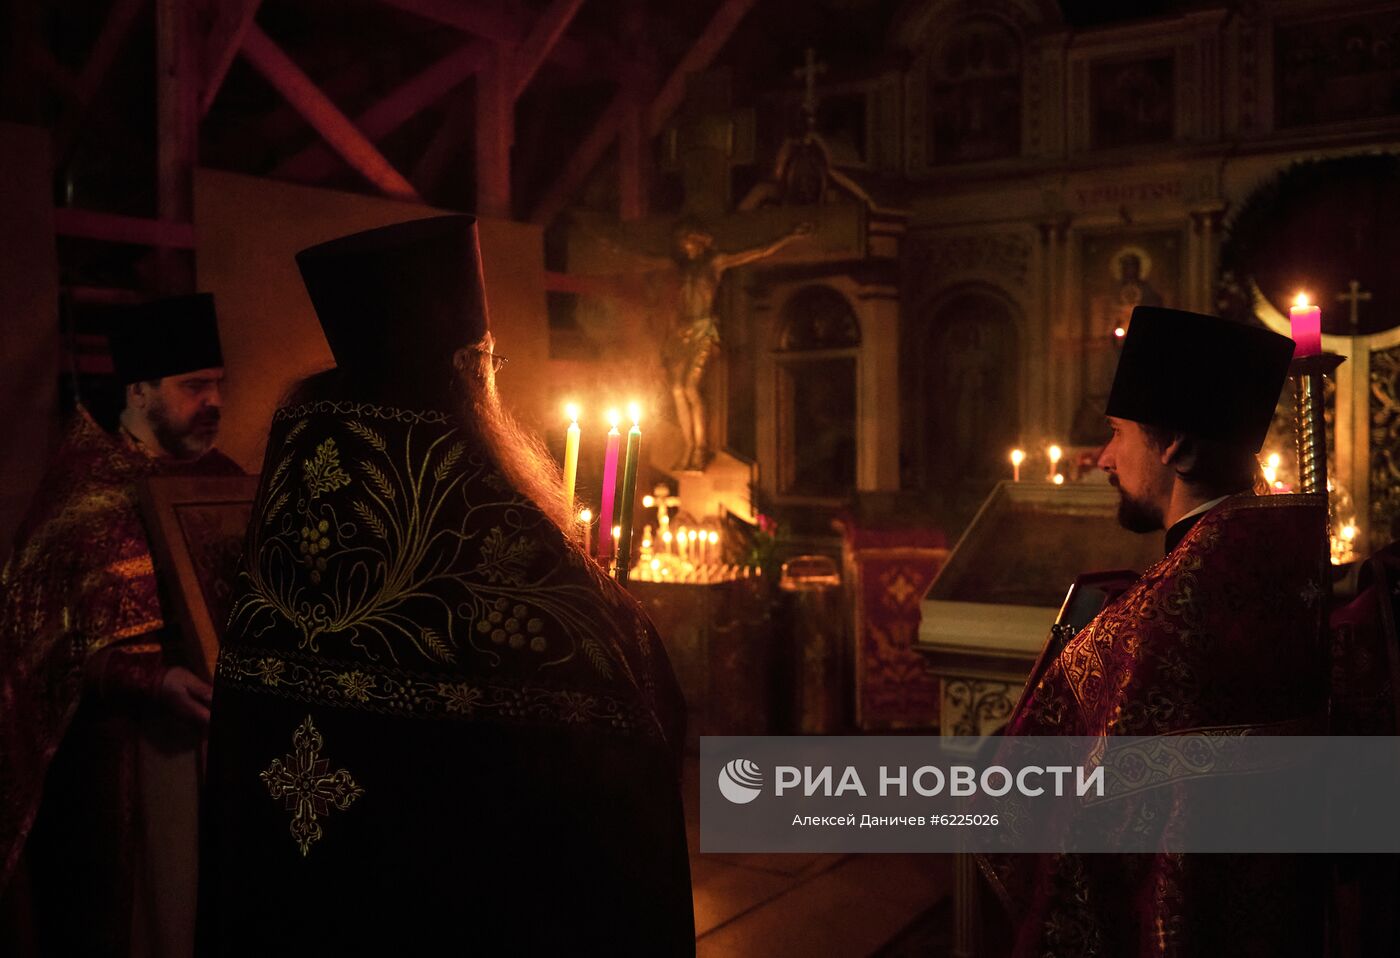 Пасхальное богослужение в регионах России